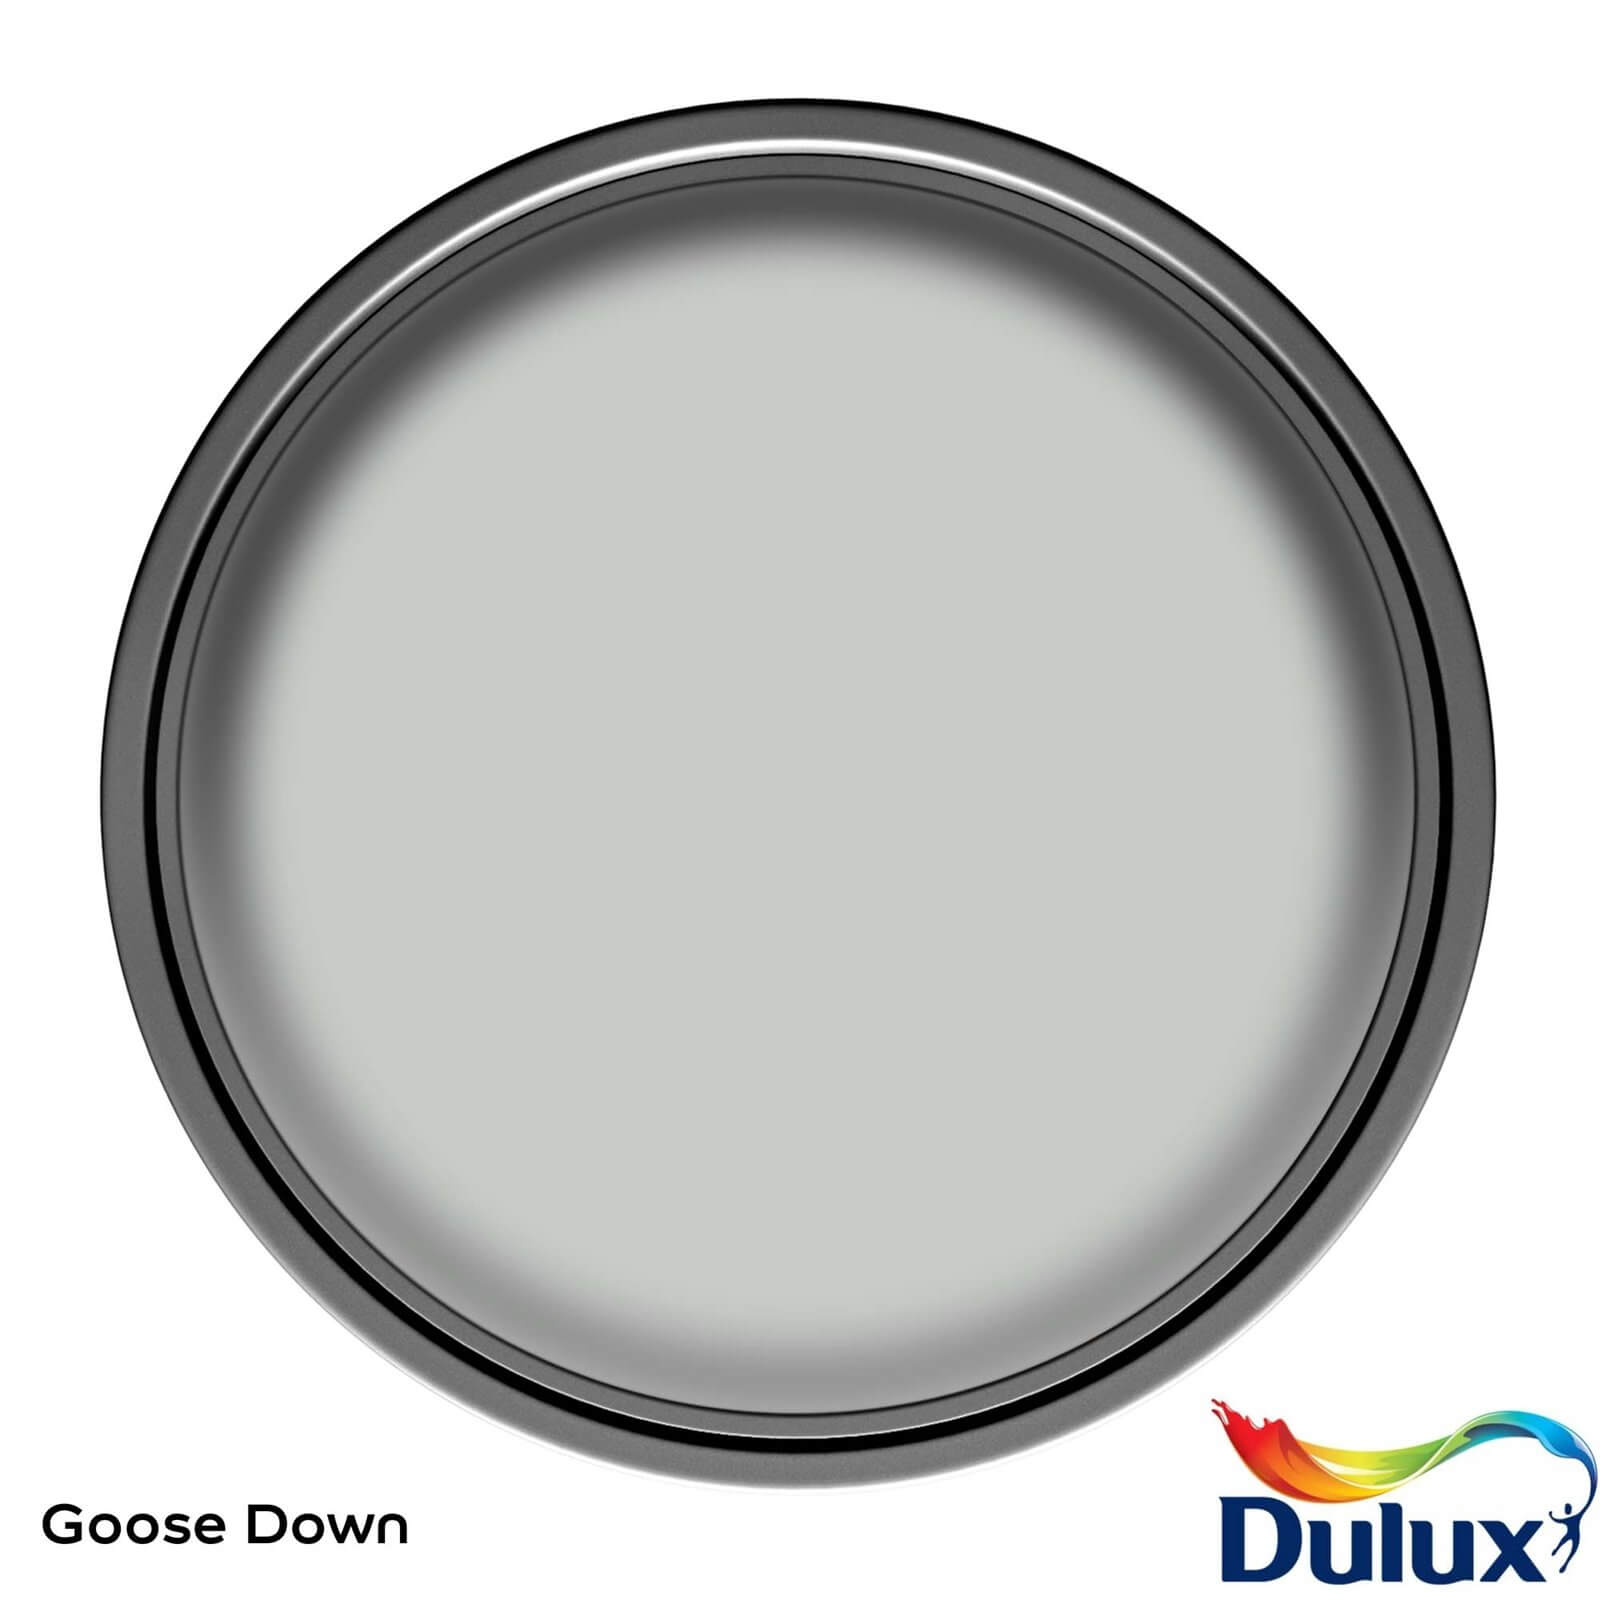 Dulux Silk Emulsion Paint Goose Down - 2.5L